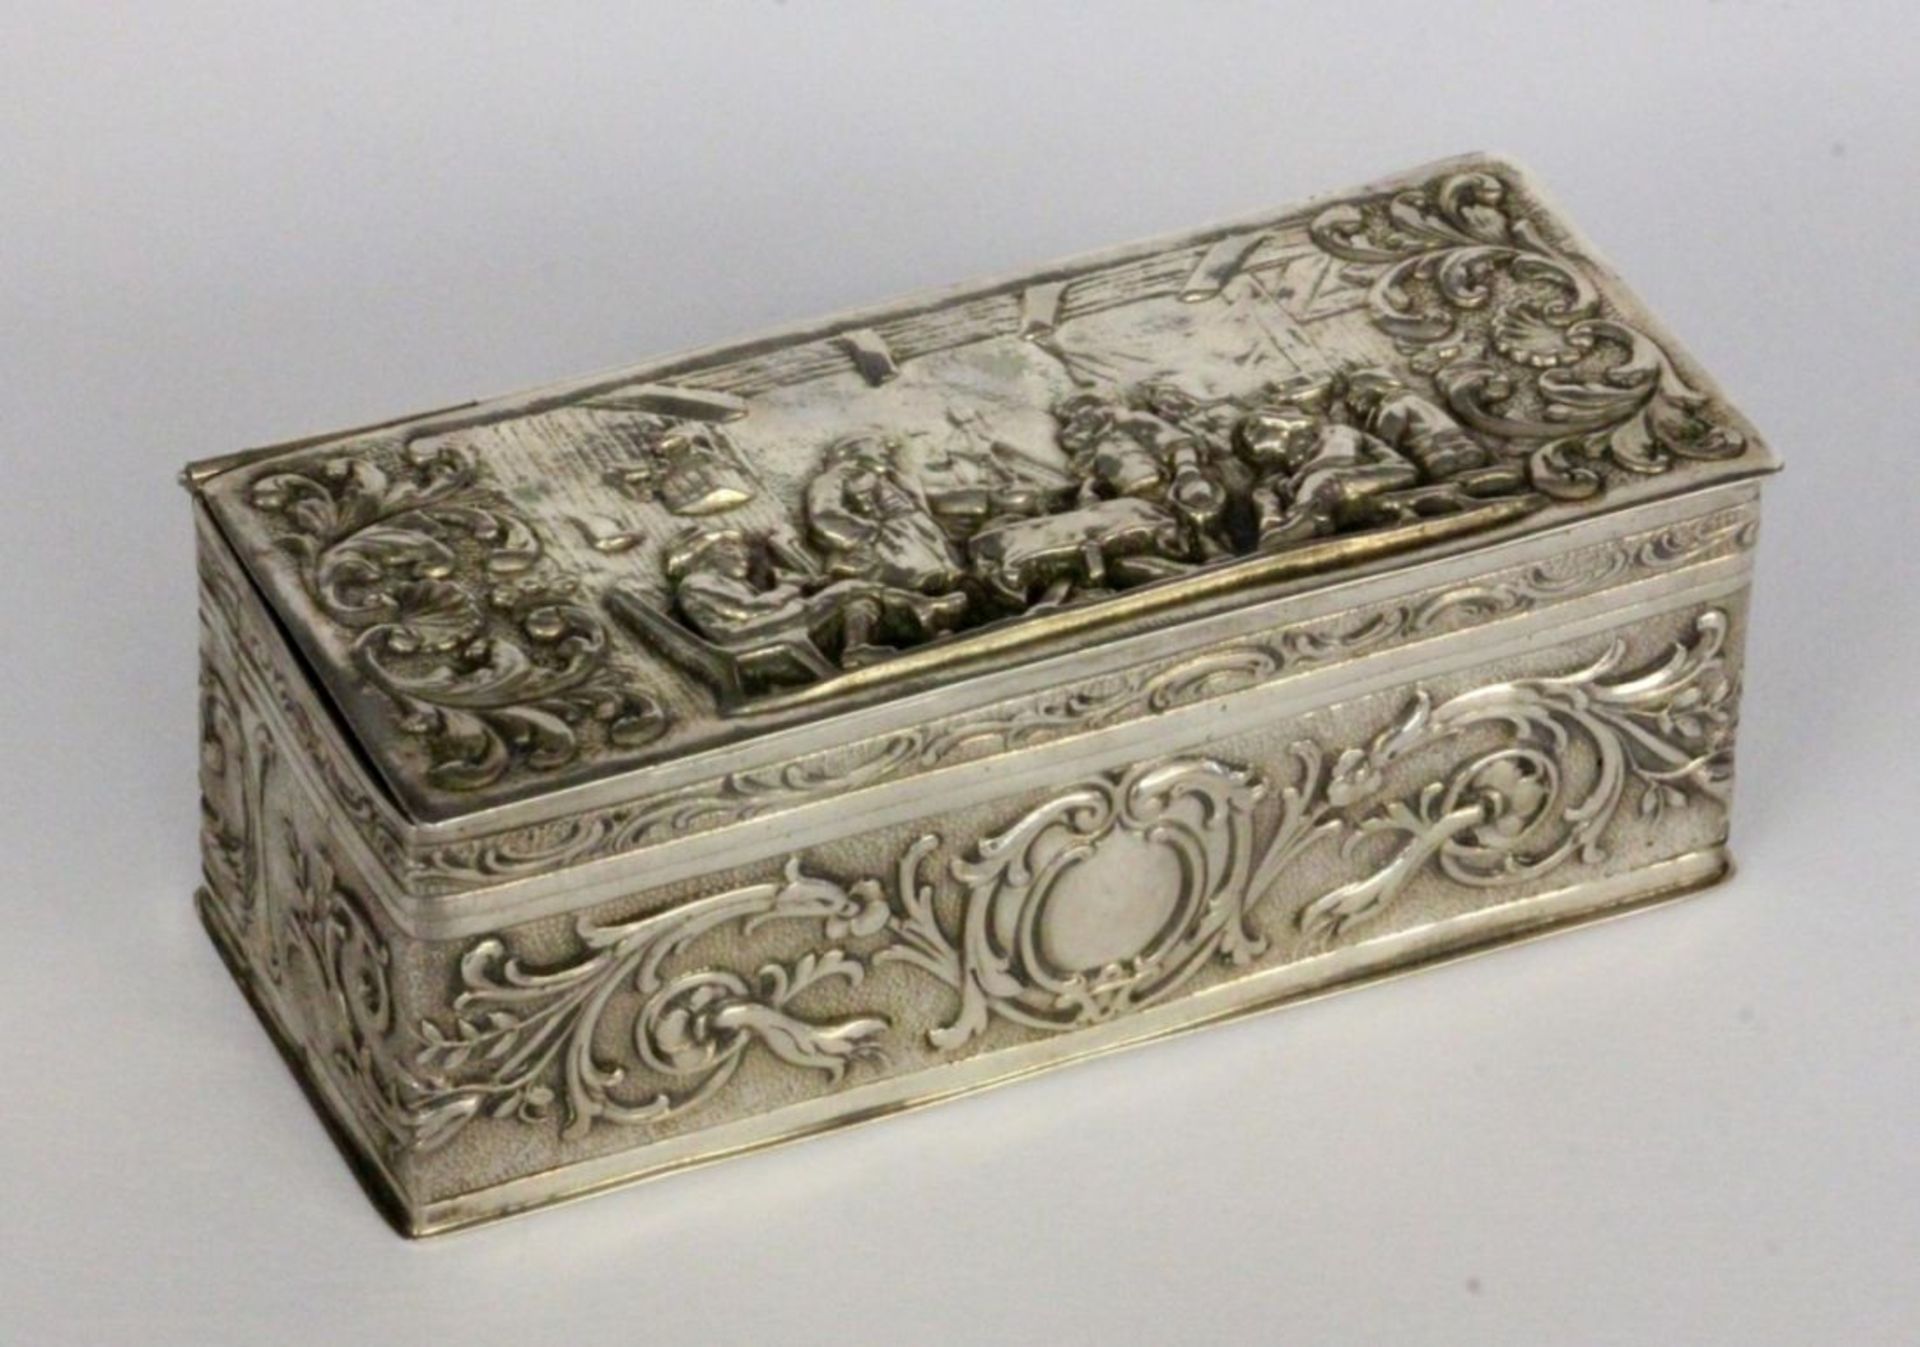 A SILVER TOBACCO BOX German circa 1900 800/000 silver with gilt interior. Rectangular